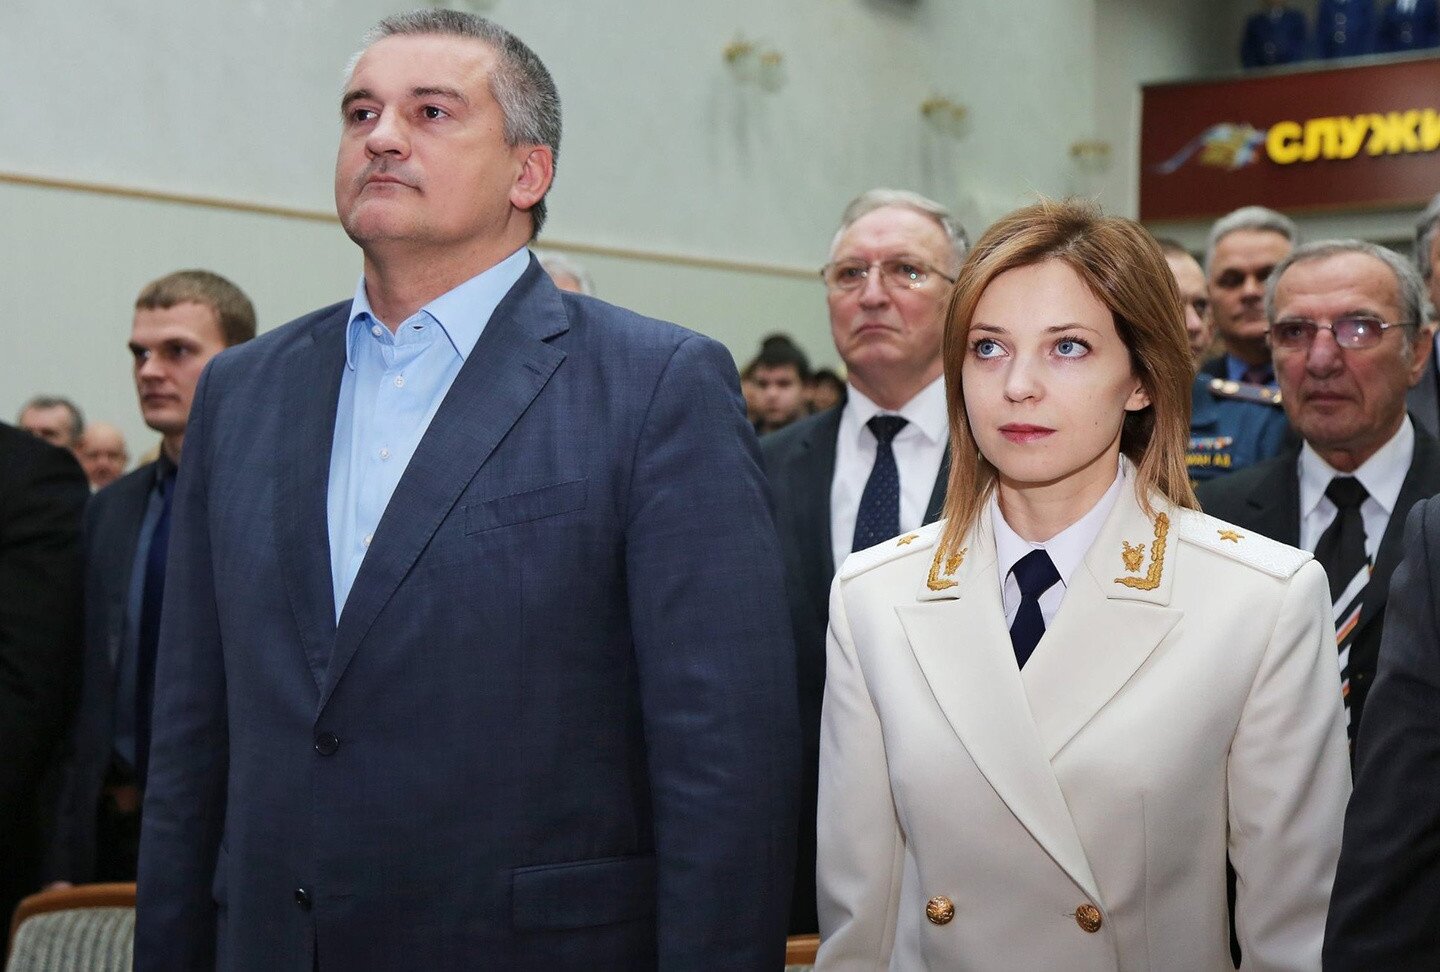 Аксенов, Поклонская и другие: стало известно, кто из политиков РФ посетит церемонию прощания с Захарченко